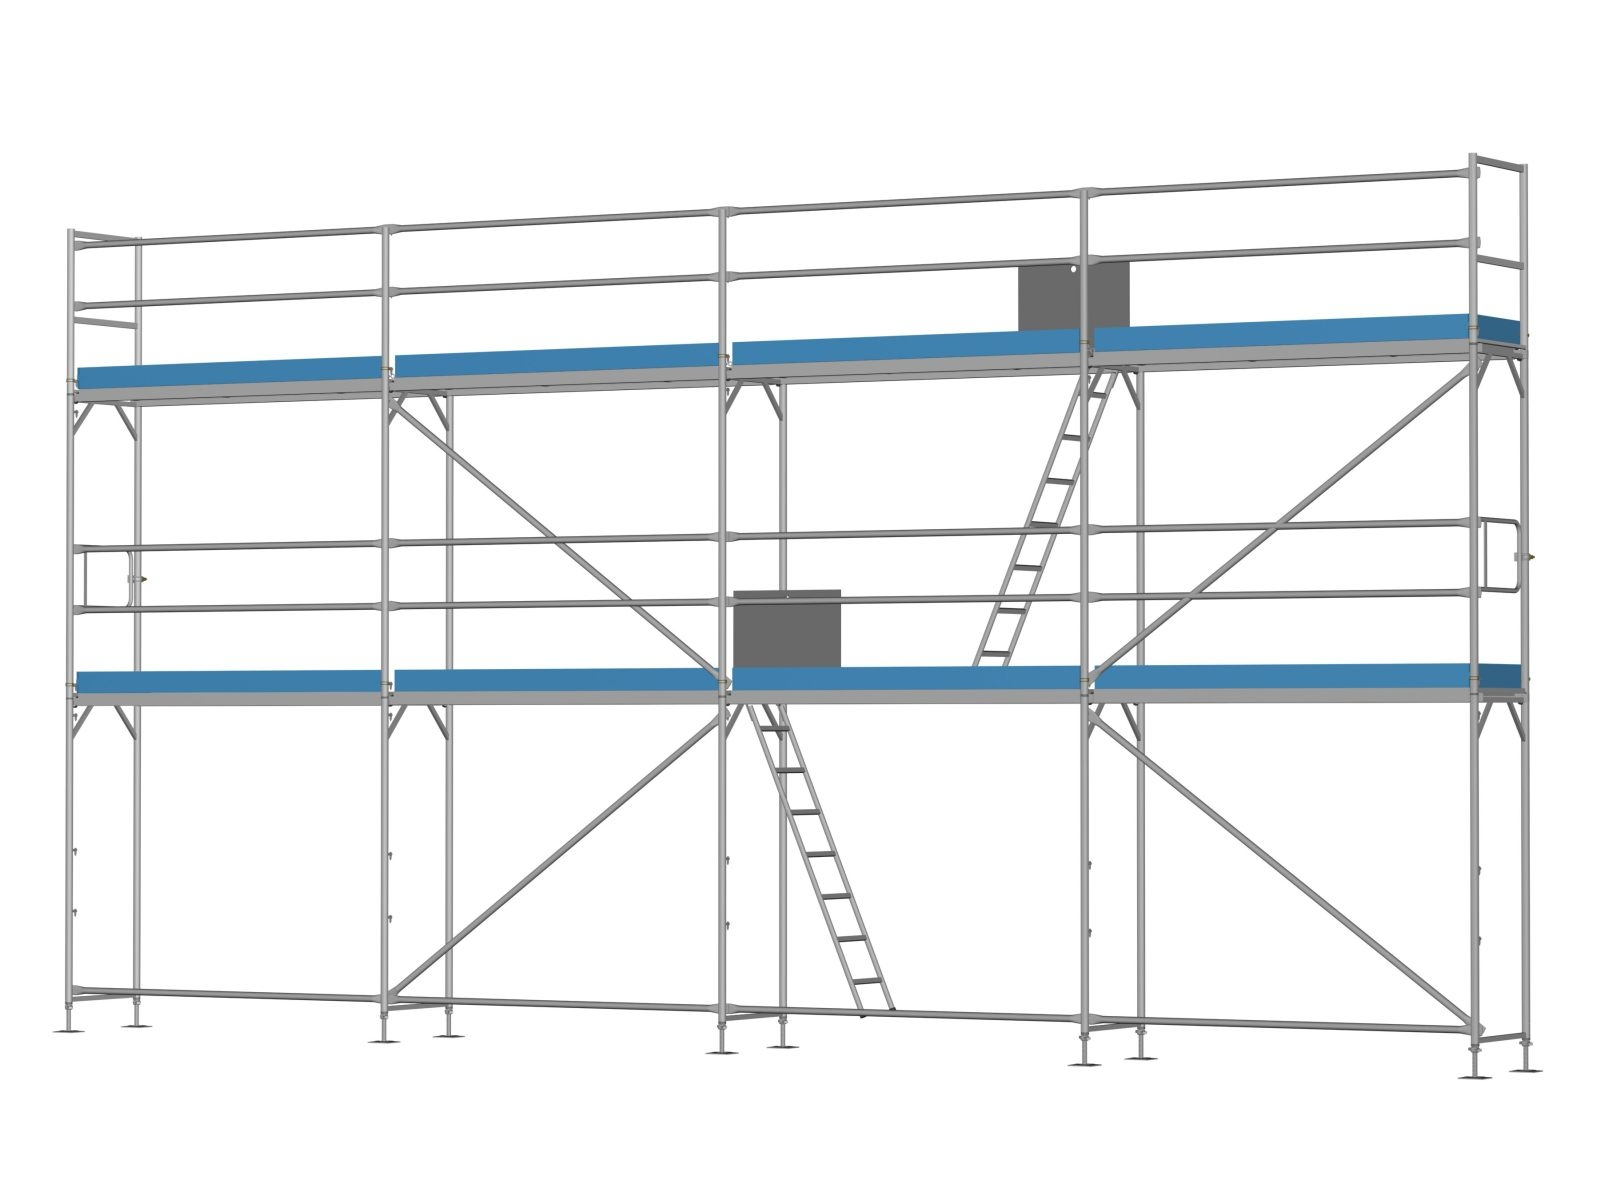 Ernst, Stahl Traufseitengerüst 60 qm - 2,5 m Felder - 10 m lang - 6 m Arbeitshöhe, Komplettpaket